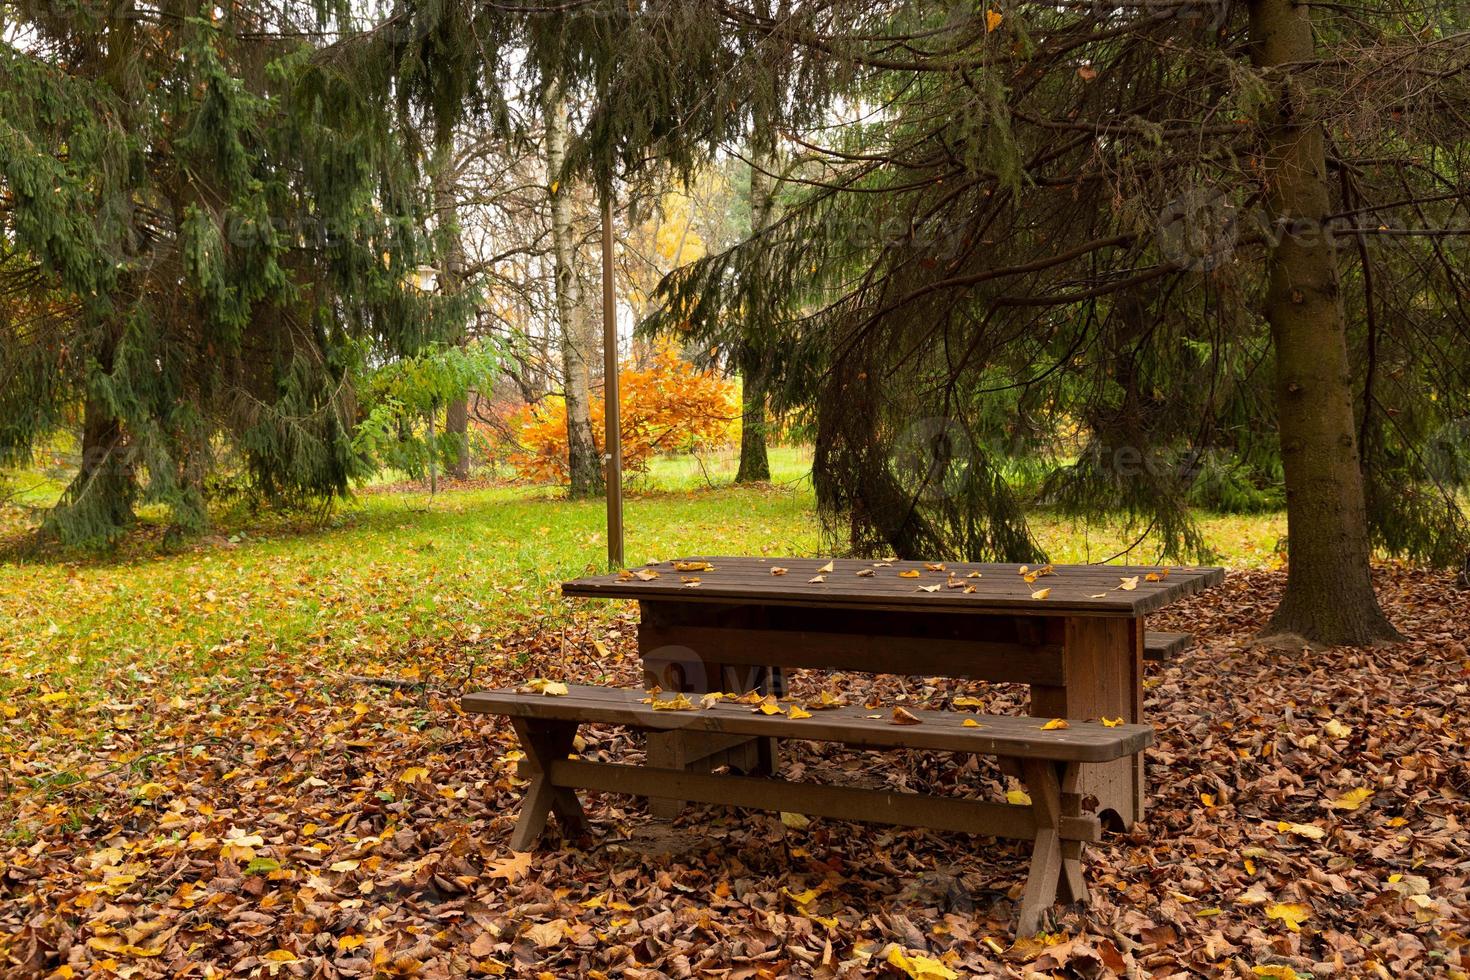 une idylle d'automne, un banc de parc solitaire attend les visiteurs. photo